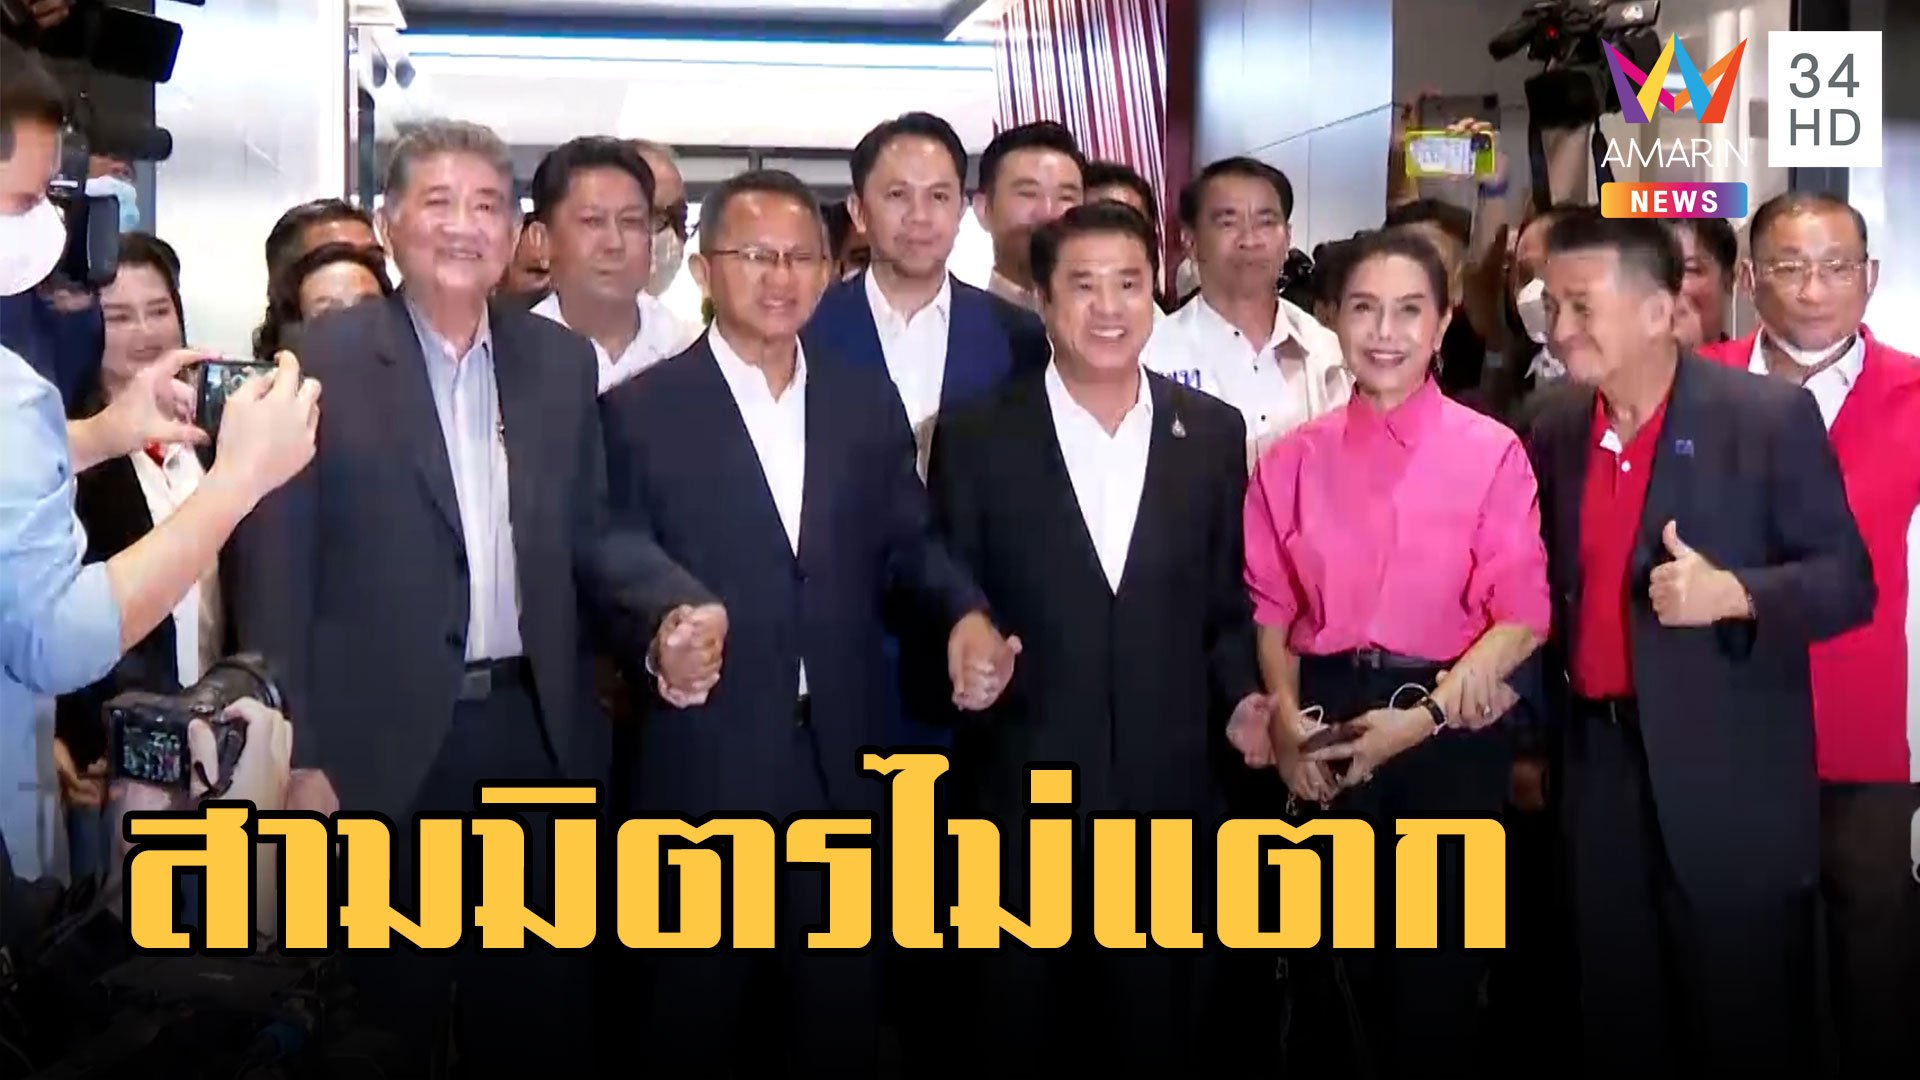 "สมศักดิ์-สุริยะ" เปิดตัวพรรคเพื่อไทย ยันกลุ่มสามมิตรไม่แตก  | ข่าวเที่ยงอมรินทร์ | 23 มี.ค. 66 | AMARIN TVHD34